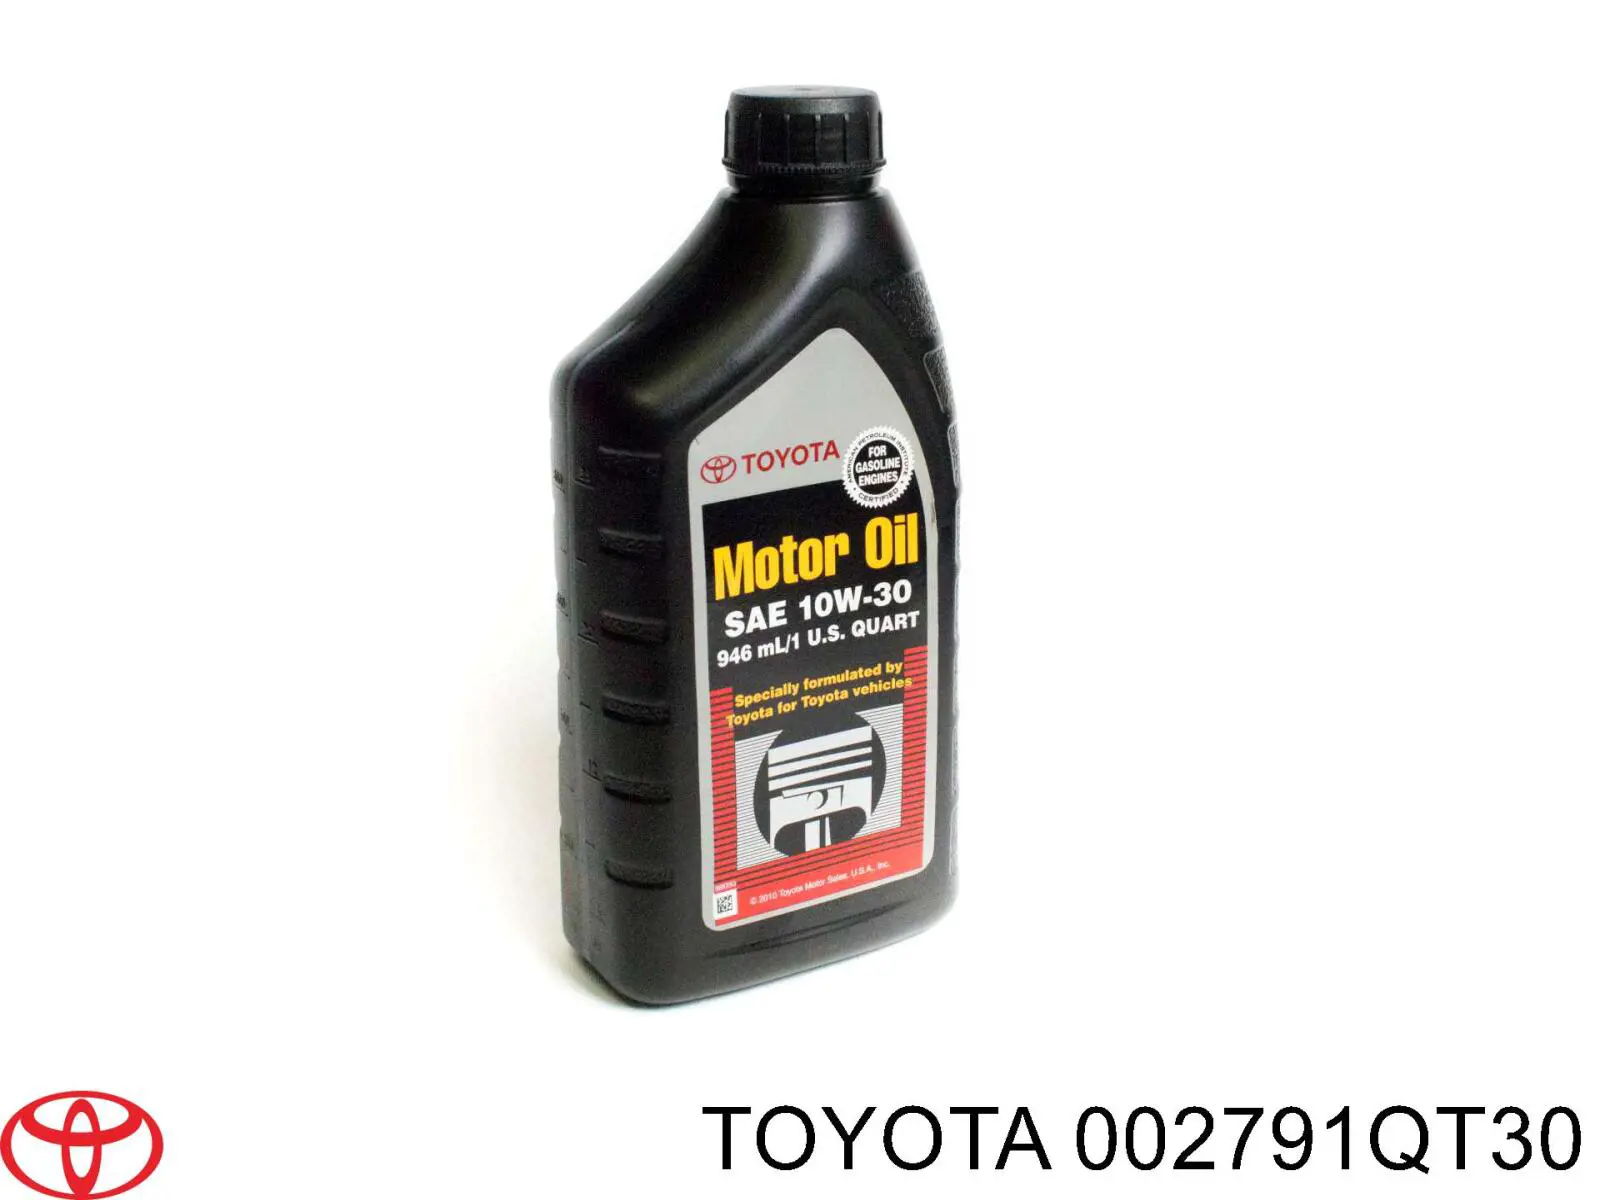 Моторное масло Toyota SM 10W-30 Полусинтетическое 1л (002791QT30)